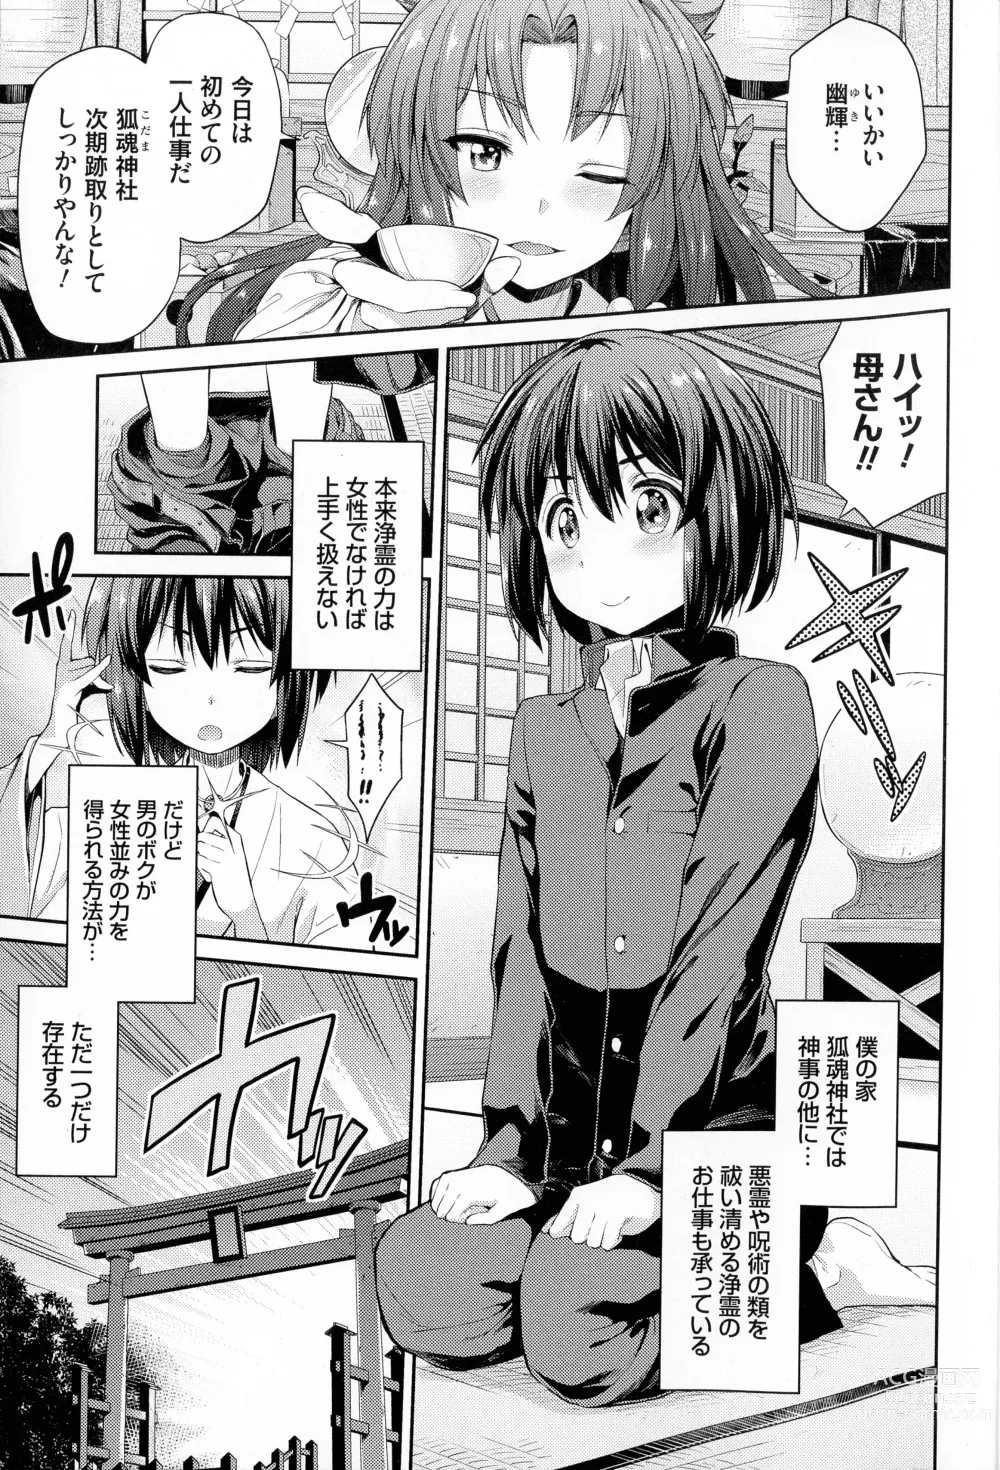 Page 8 of manga Hyoui Koukan